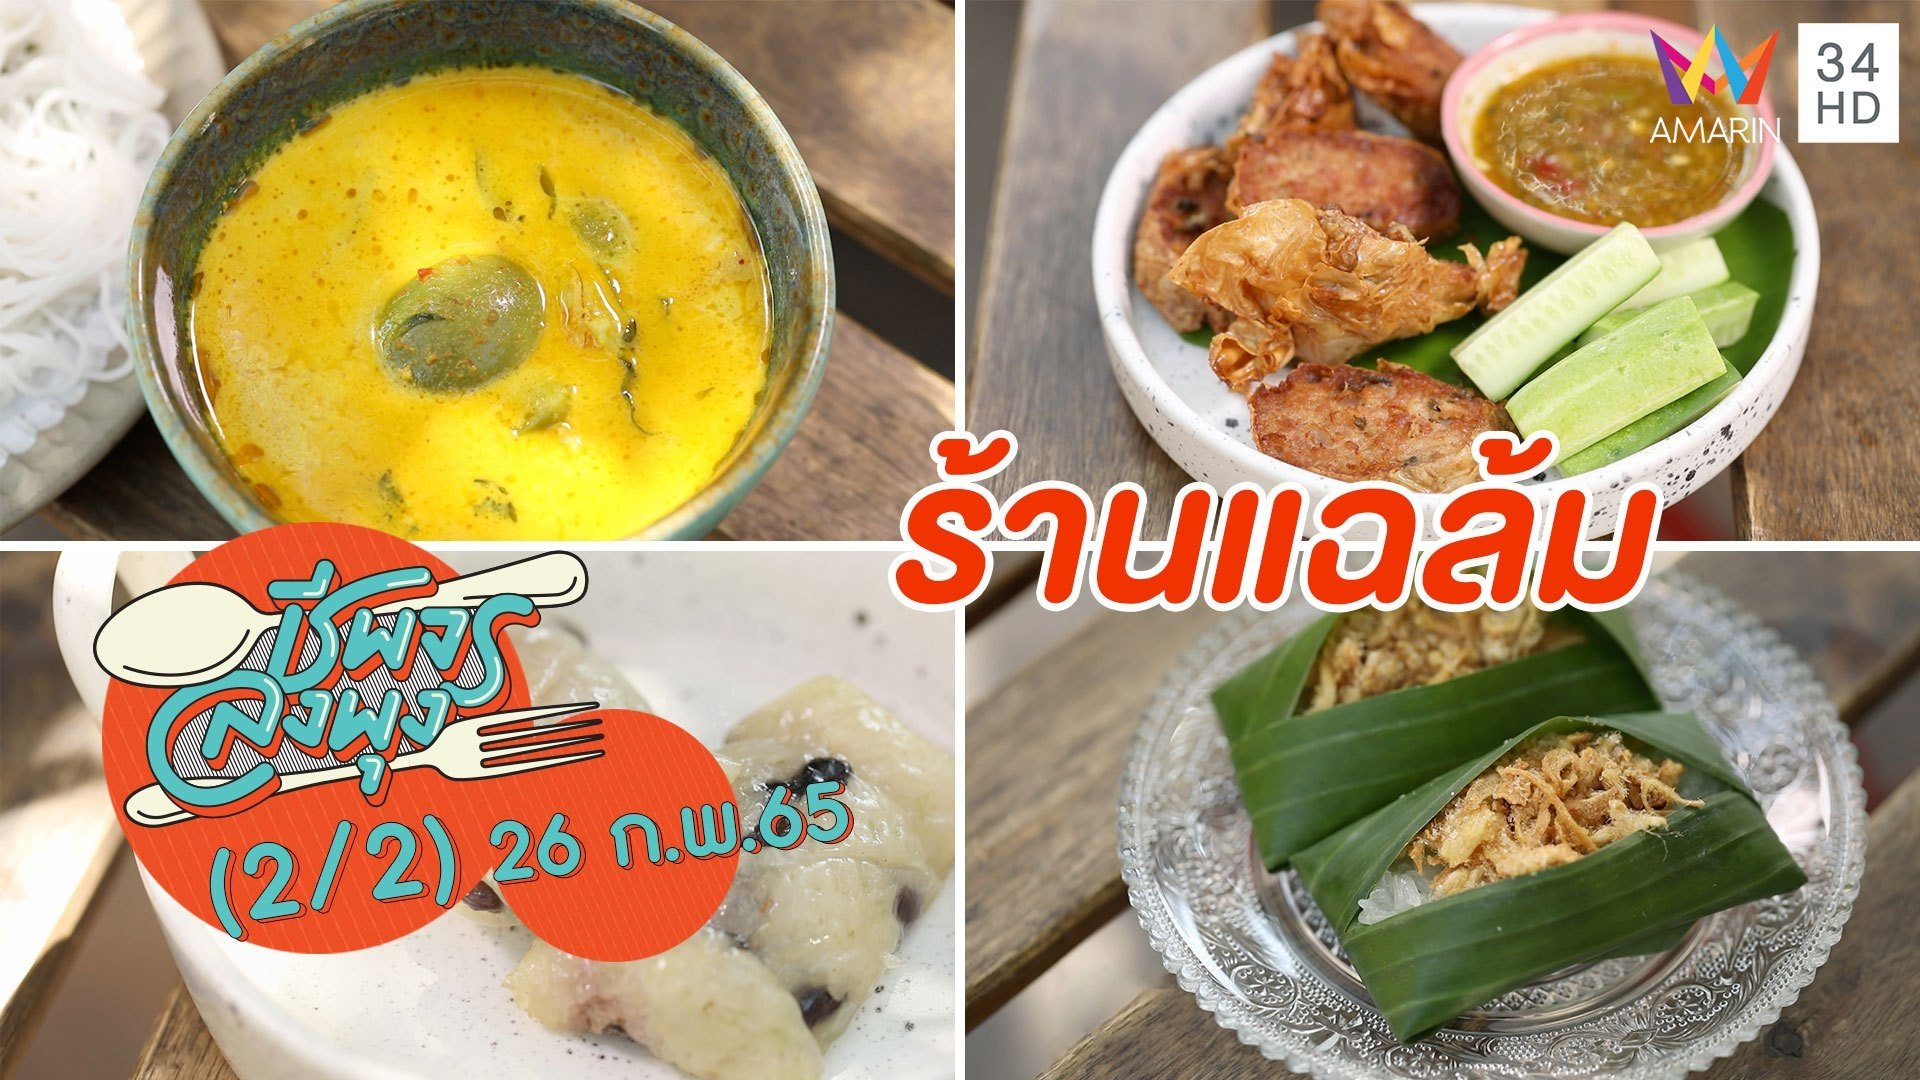 อาหารไทยสูตรดั้งเดิมโบราณ อร่อยไม่ใส่ผงชูรส @ ร้านแฉล้ม | ชีพจรลงพุง | 26 ก.พ. 65 (2/2) | AMARIN TVHD34